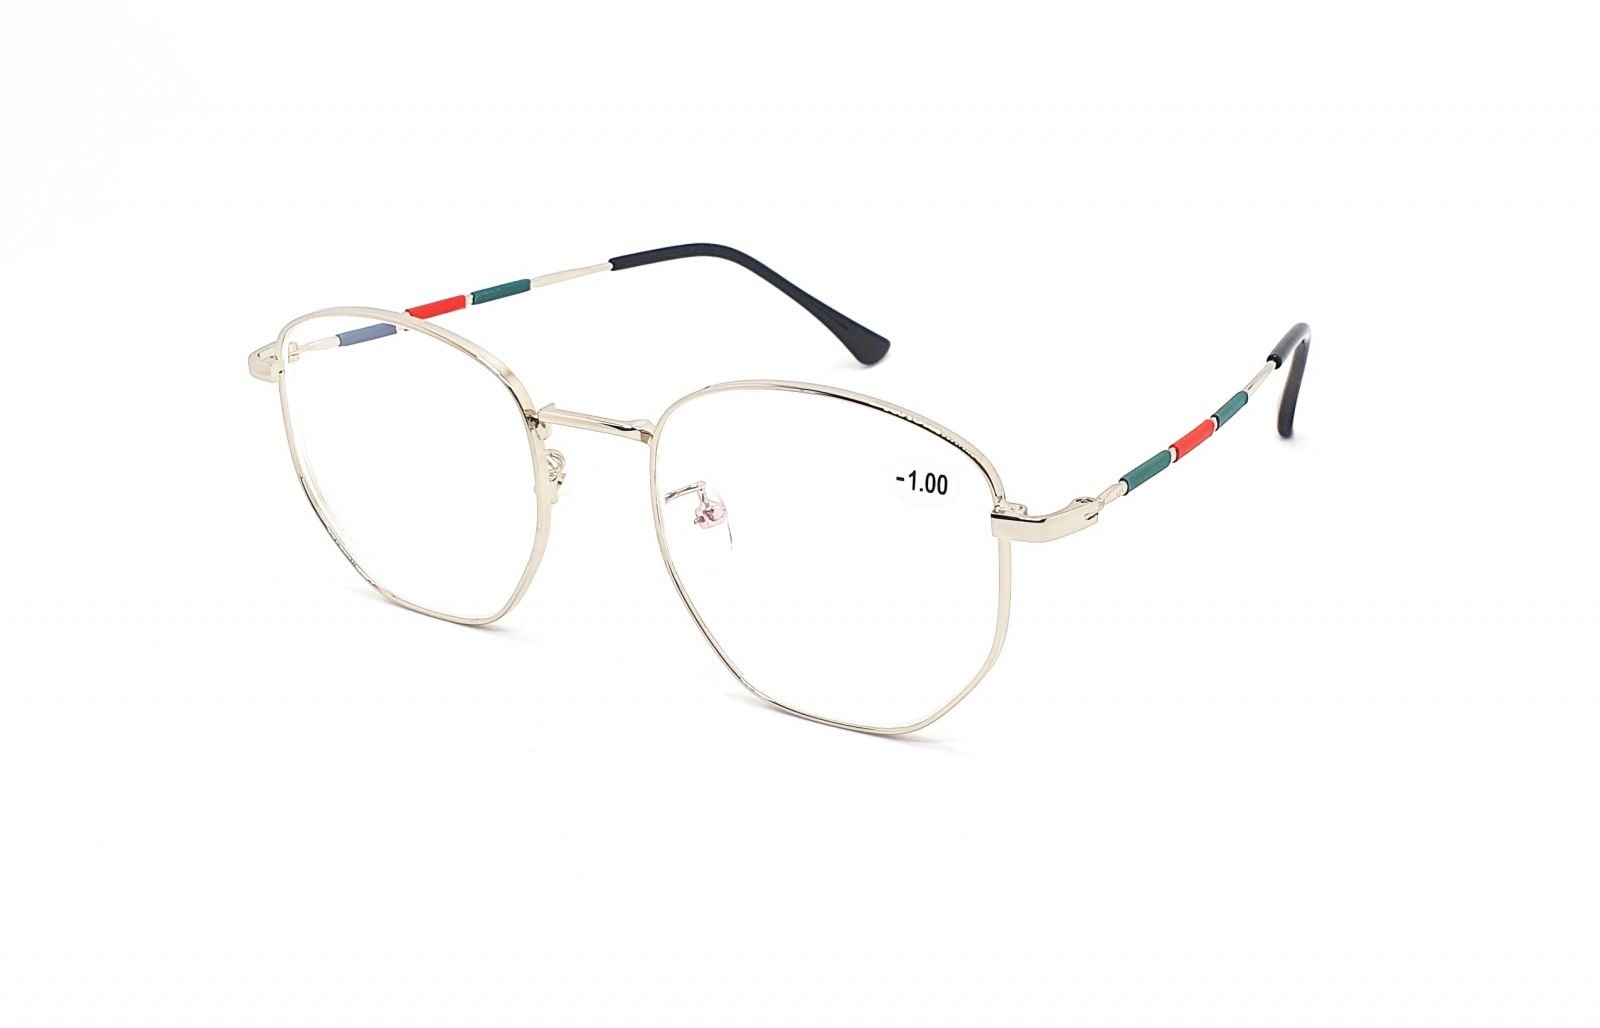 Dioptrické brýle 6812 / -0,50 s antireflexní vrstvou